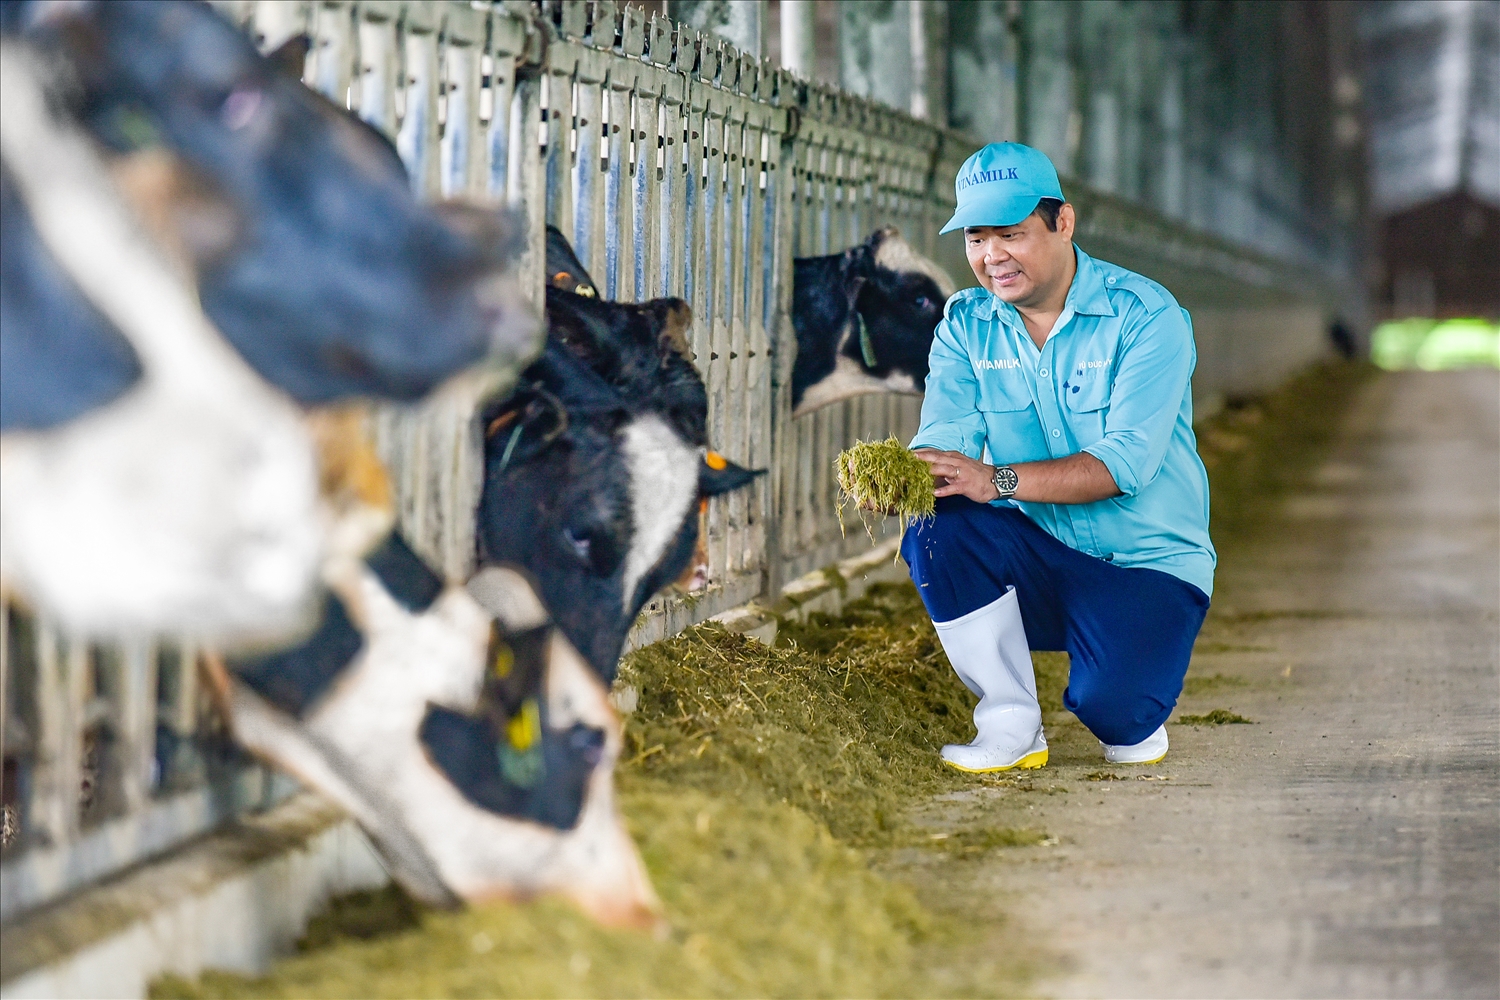 Sau khi về trang trại và được chăm sóc theo chế độ “tân đáo”, sức khỏe đàn bò đã ổn định và thích nghi với khí hậu tại Việt Nam